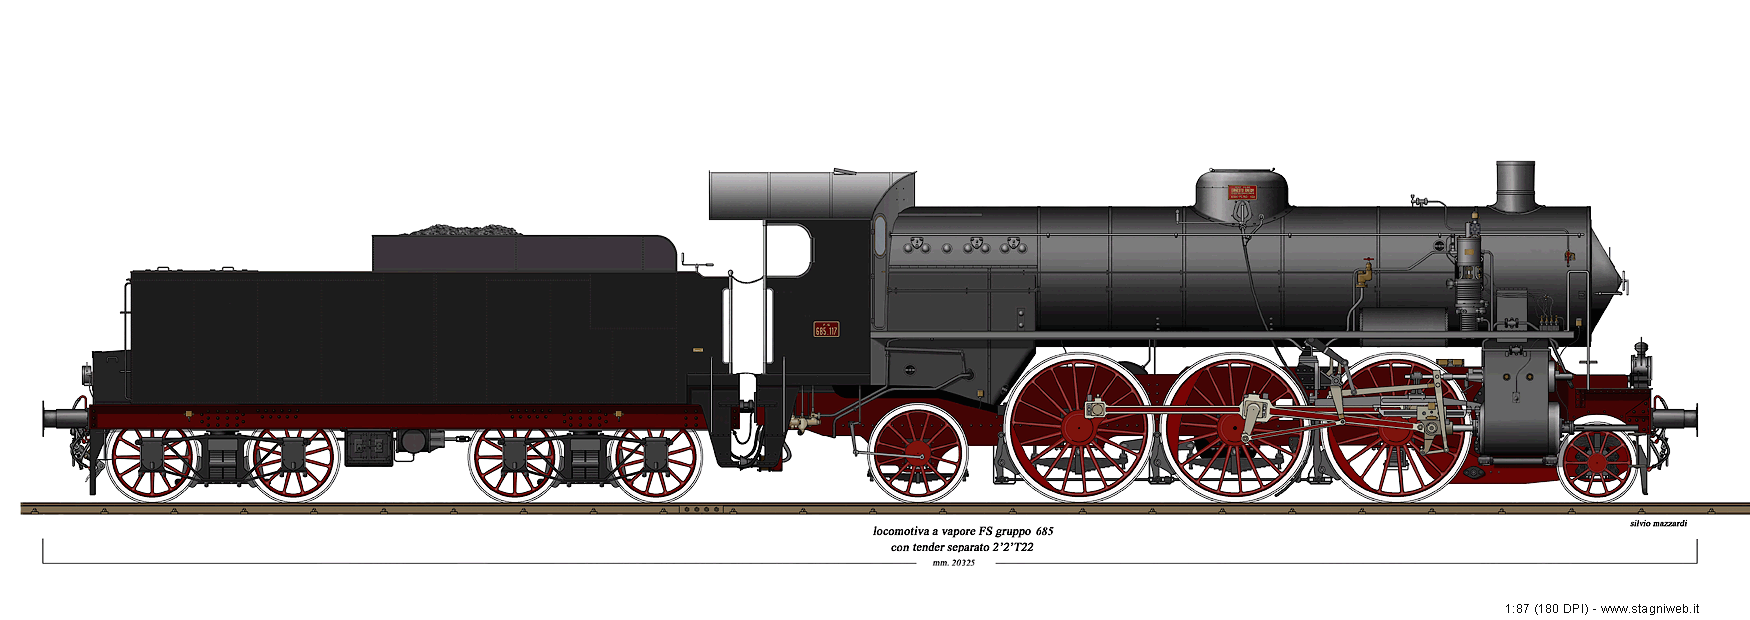 Locomotive a vapore con tender separato - Gr. 685